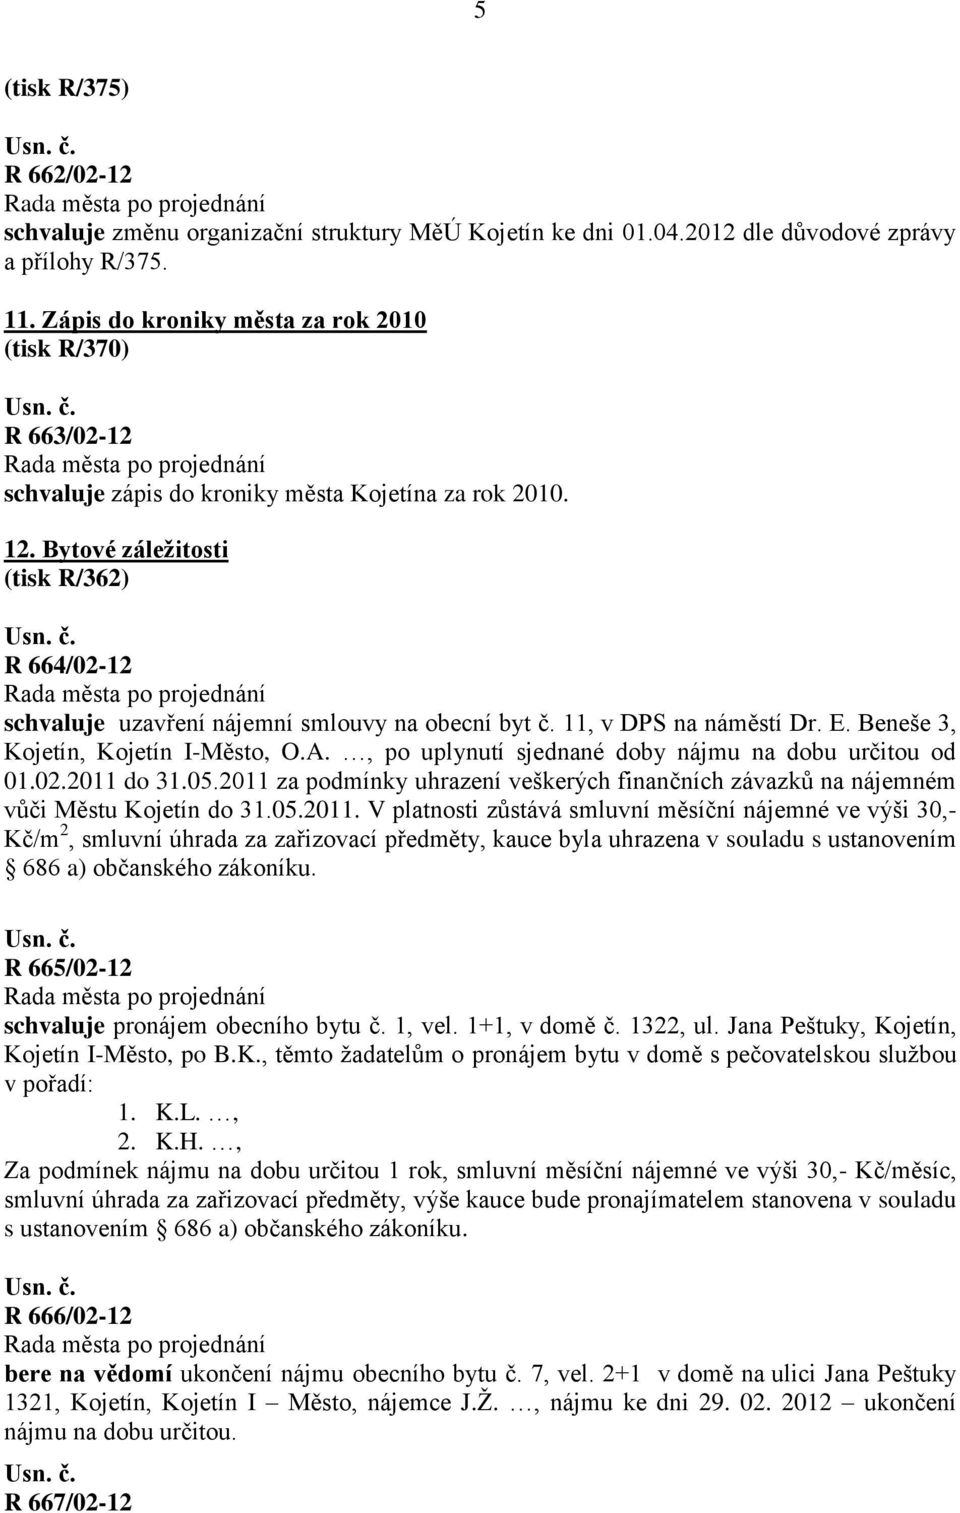 Bytové záleţitosti (tisk R/362) R 664/02-12 schvaluje uzavření nájemní smlouvy na obecní byt č. 11, v DPS na náměstí Dr. E. Beneše 3, Kojetín, Kojetín I-Město, O.A.